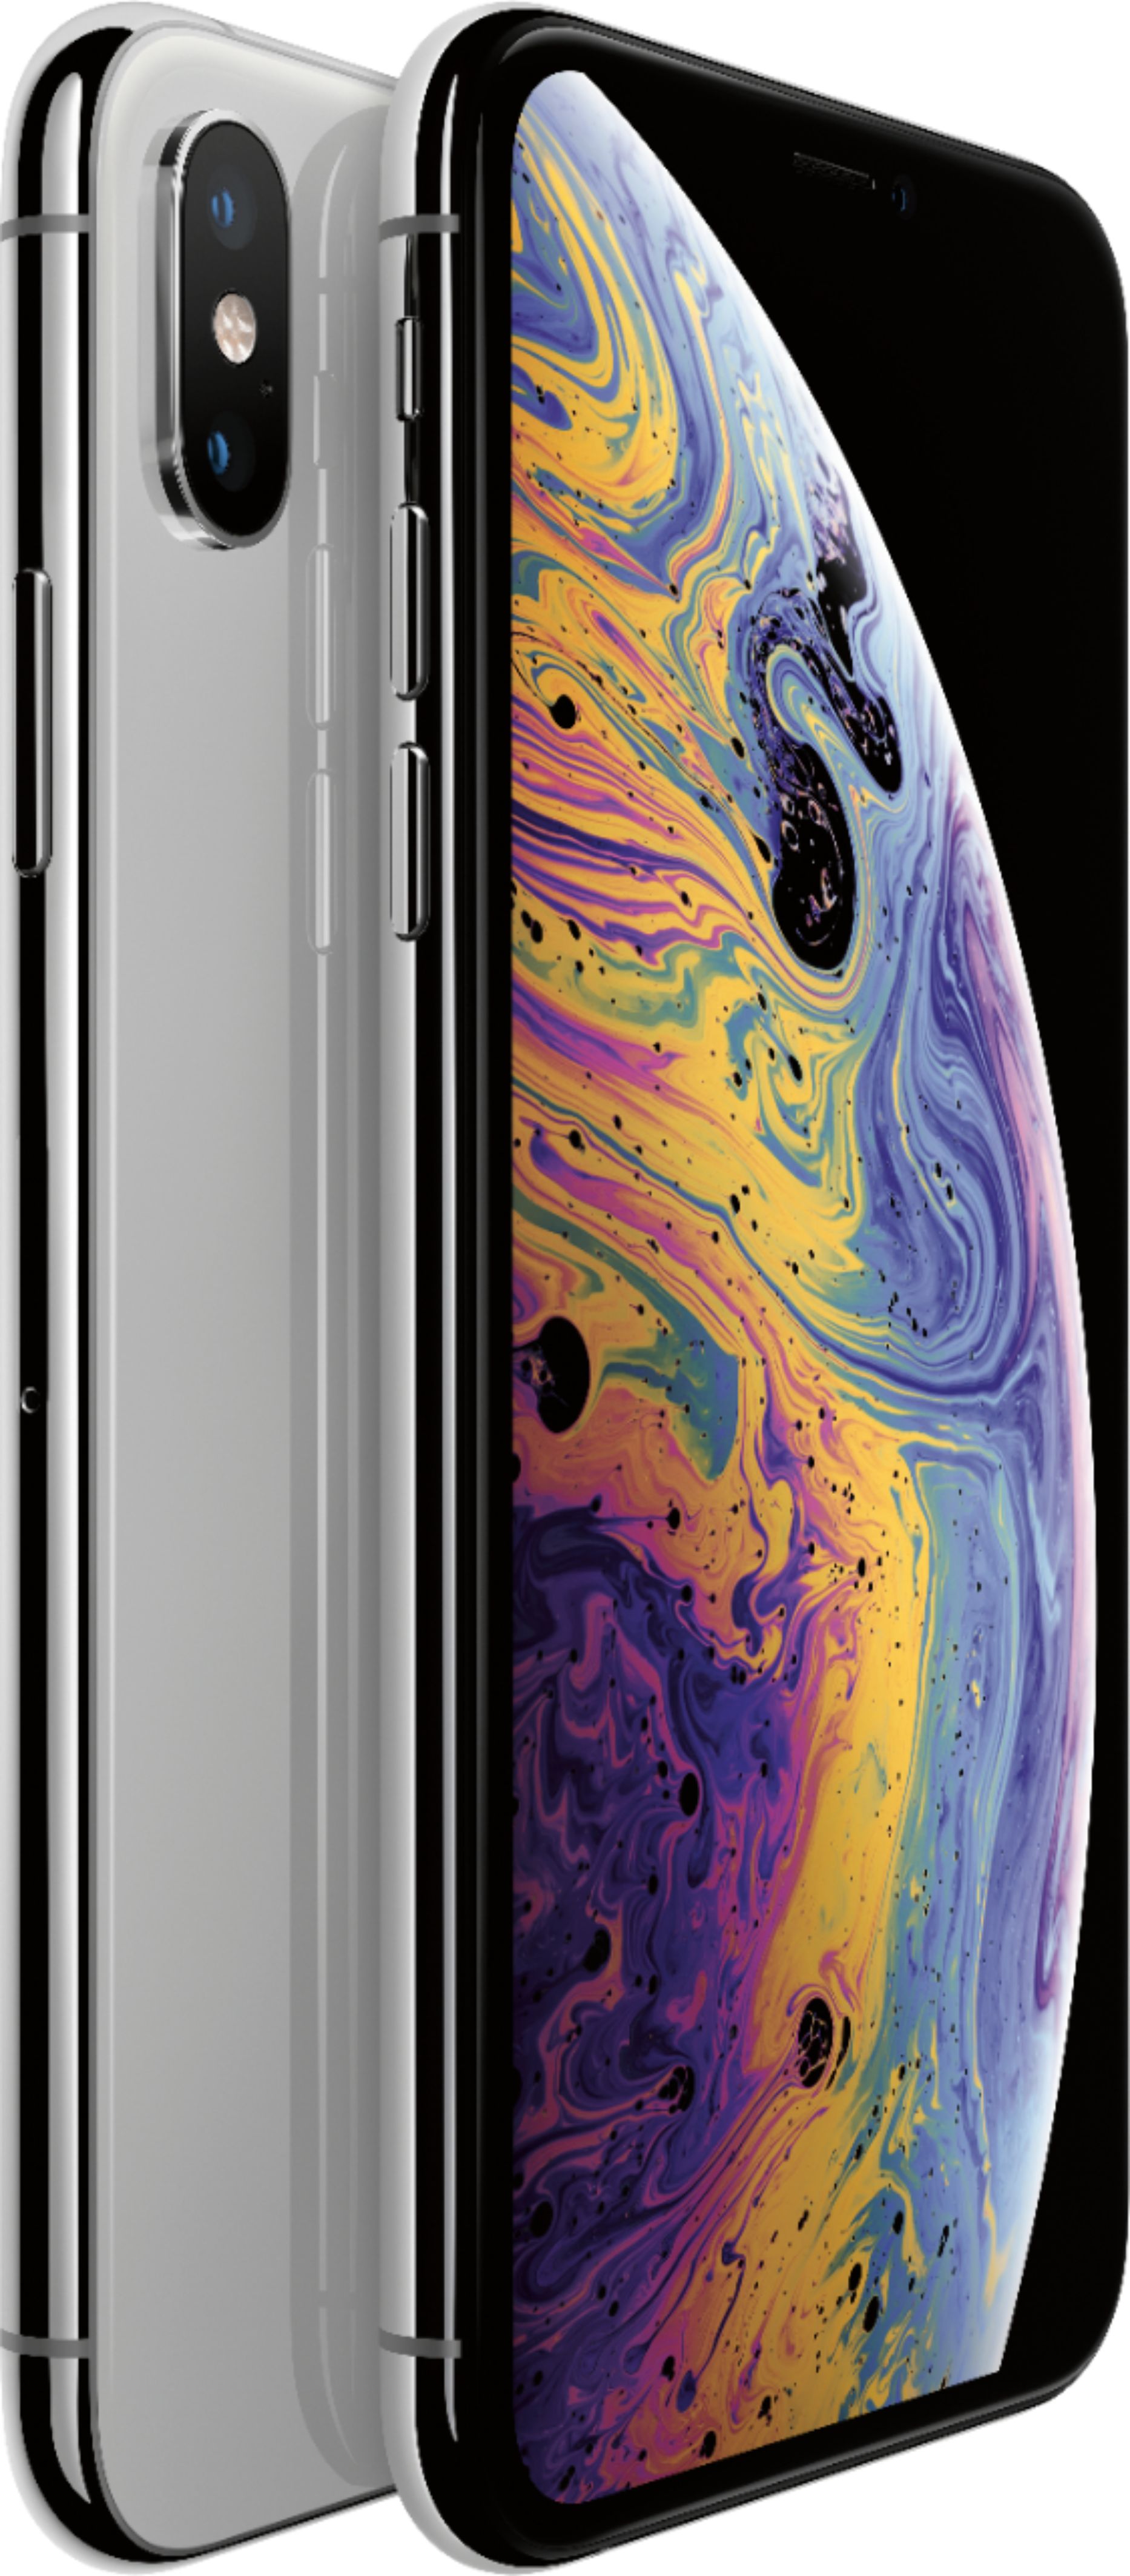 最も安い購入 iPhone xs silver 64G スマートフォン本体